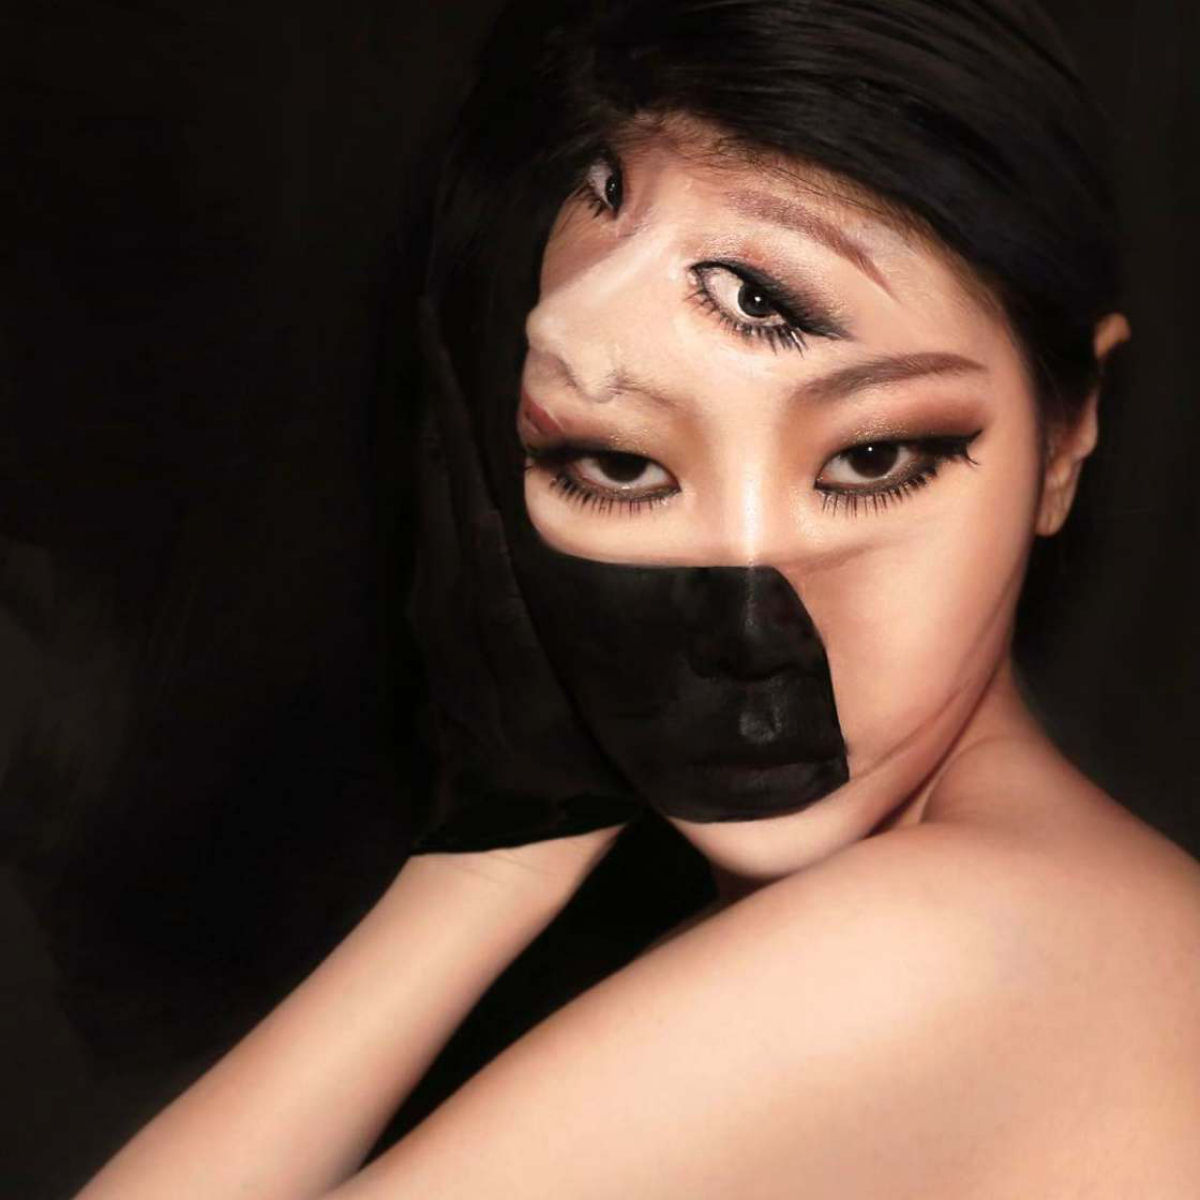 Artista sul-coreana usa maquiagem para transformar sua face em iluses pticas fascinantes 19